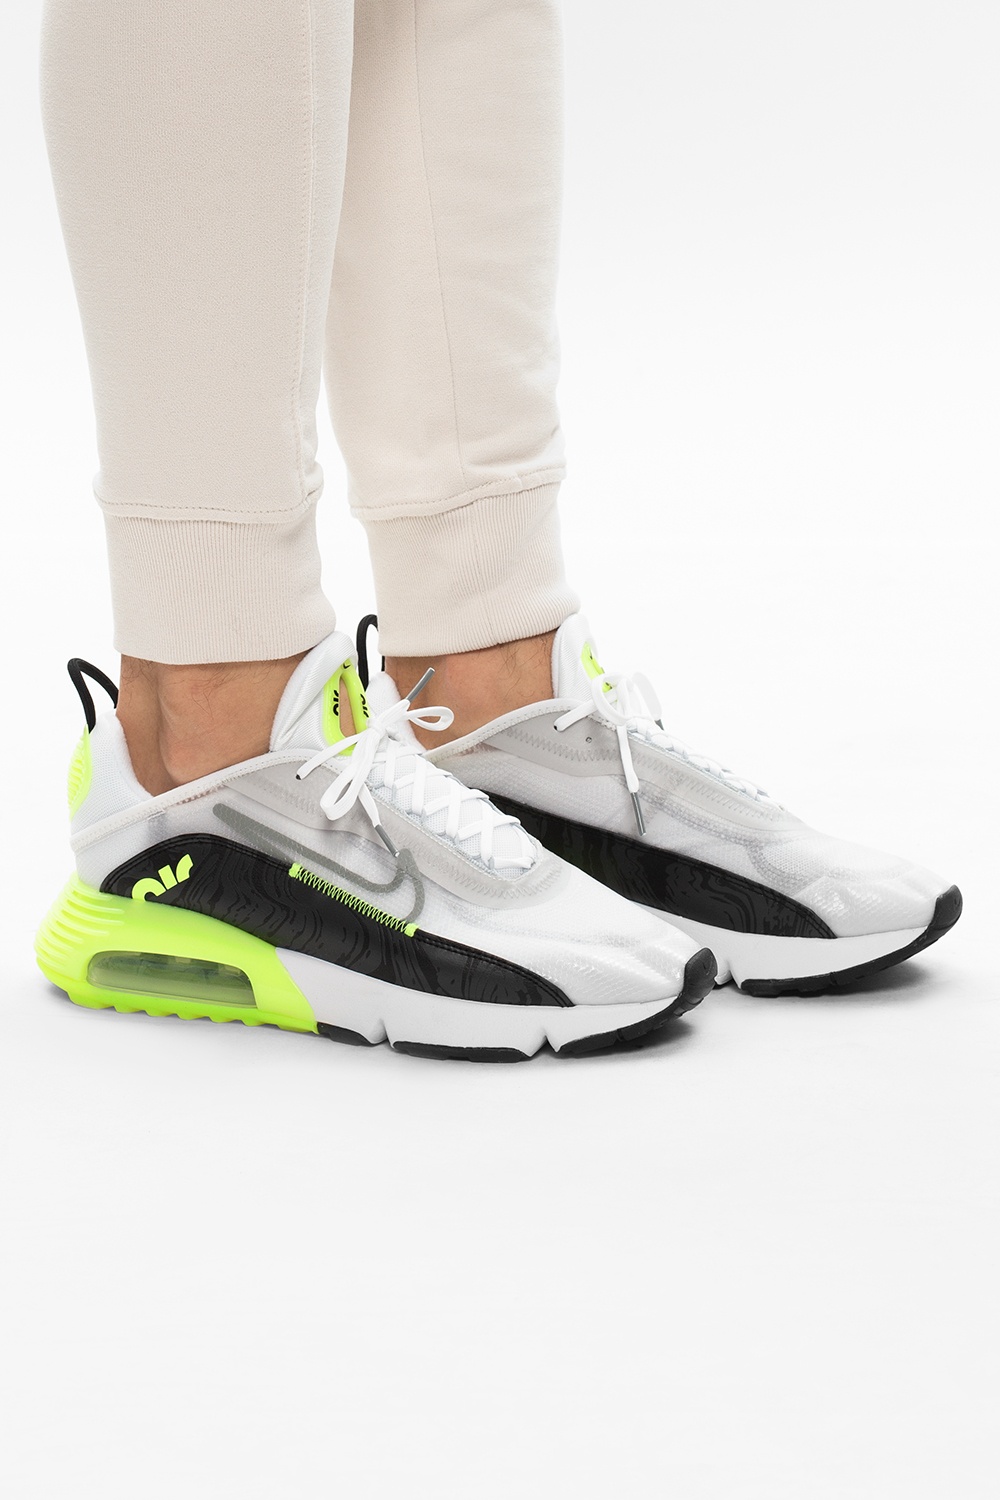 Neon 'Air Max 2090' sneakers Nike - Vitkac Canada